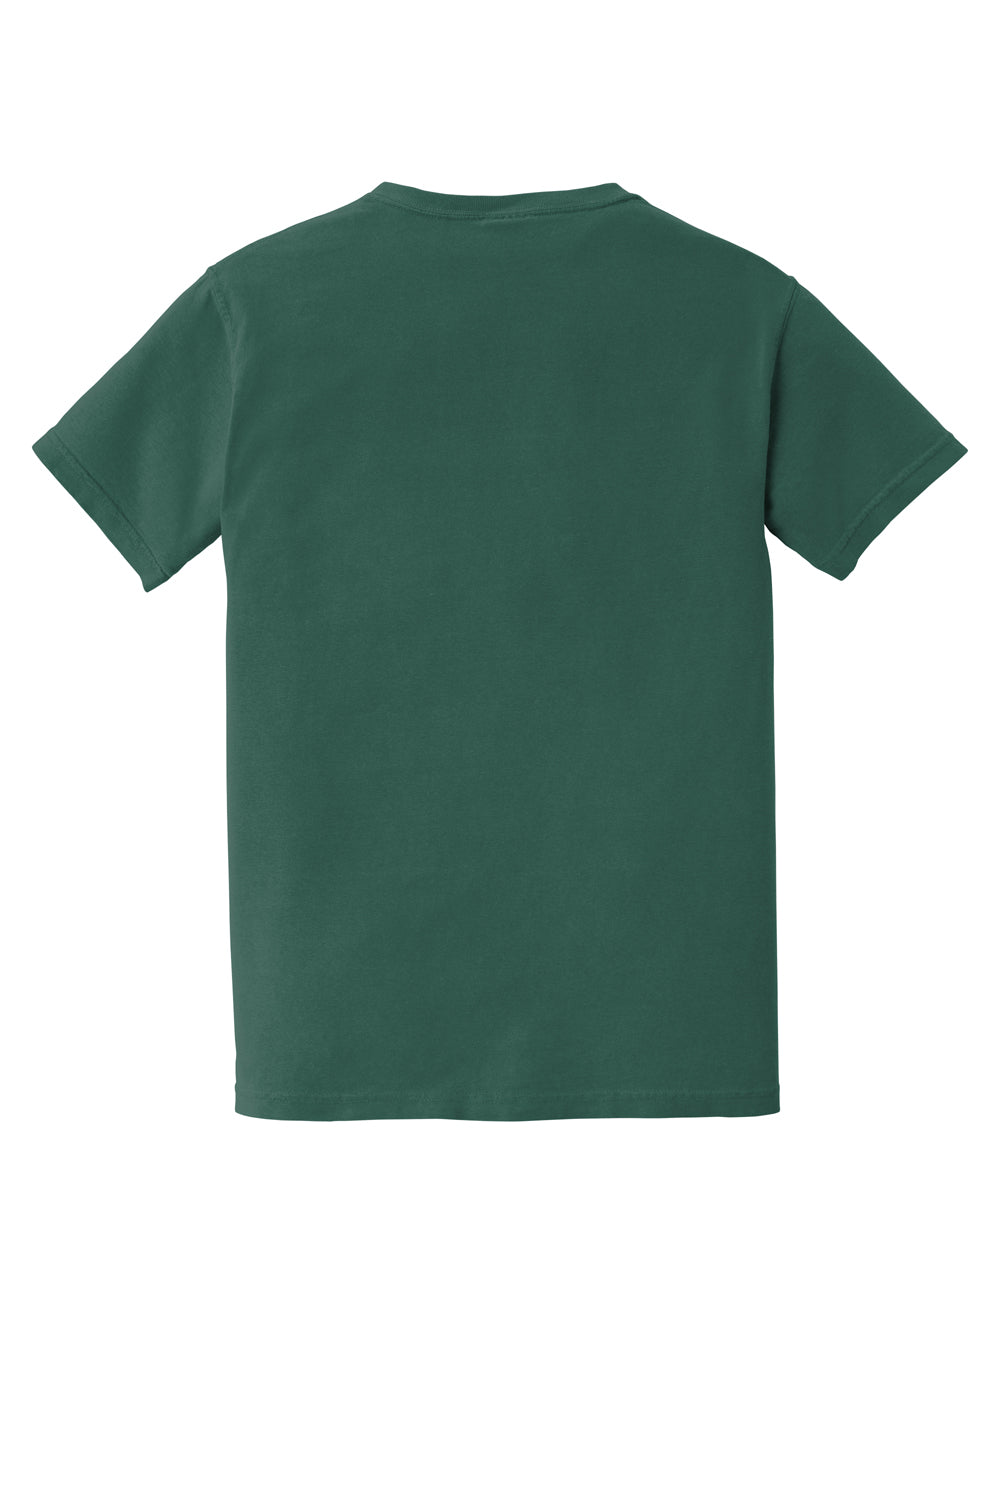 Comfort Colors Mens Short Sleeve Crewneck T-Shirt w/ Pocket Emerald Green Flat Back